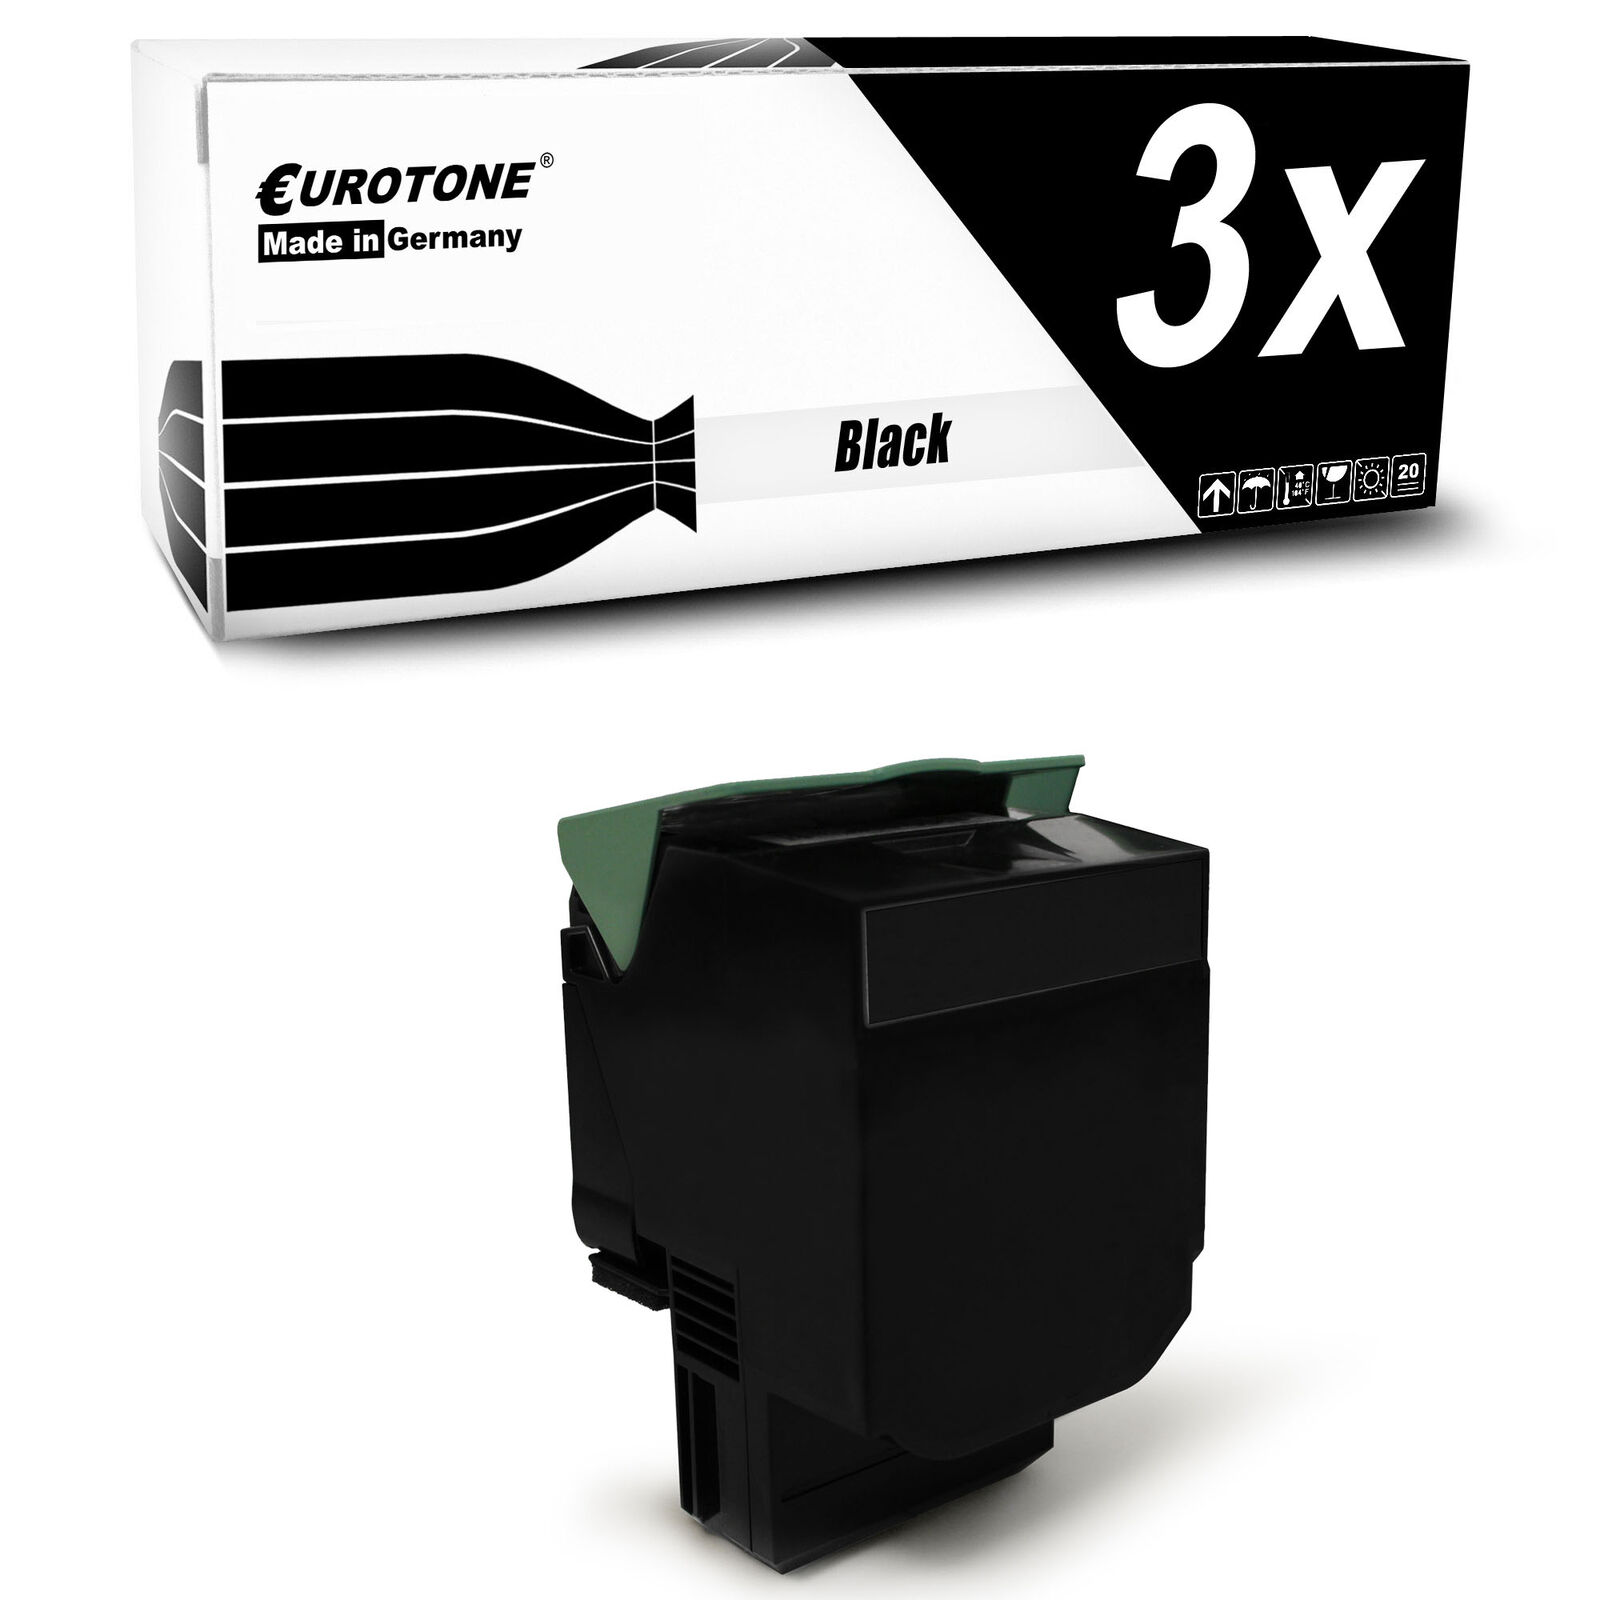 3x Toner Black for Lexmark X-543-DN X-544-DN C-540-N X-544-DTN C-544-DW